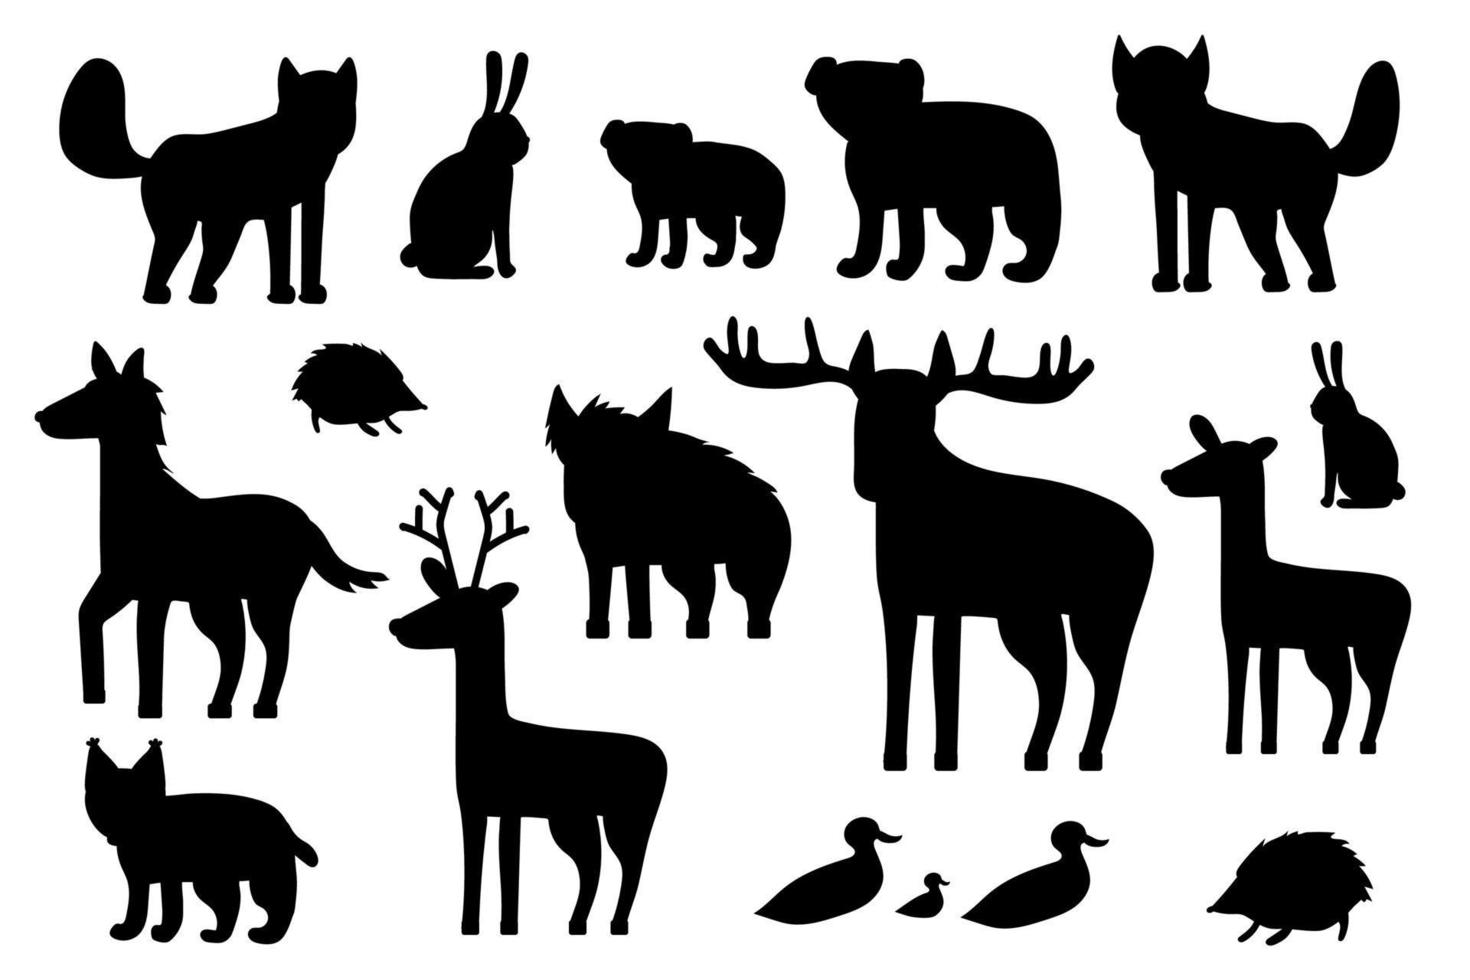 ensemble d'animaux de la forêt de silhouette noire. dessin animé vecteur isolé renard, loup, ours, ourson, wapiti, cerf, daim, hérisson, lièvre, canard, caneton, lynx, cheval, sanglier